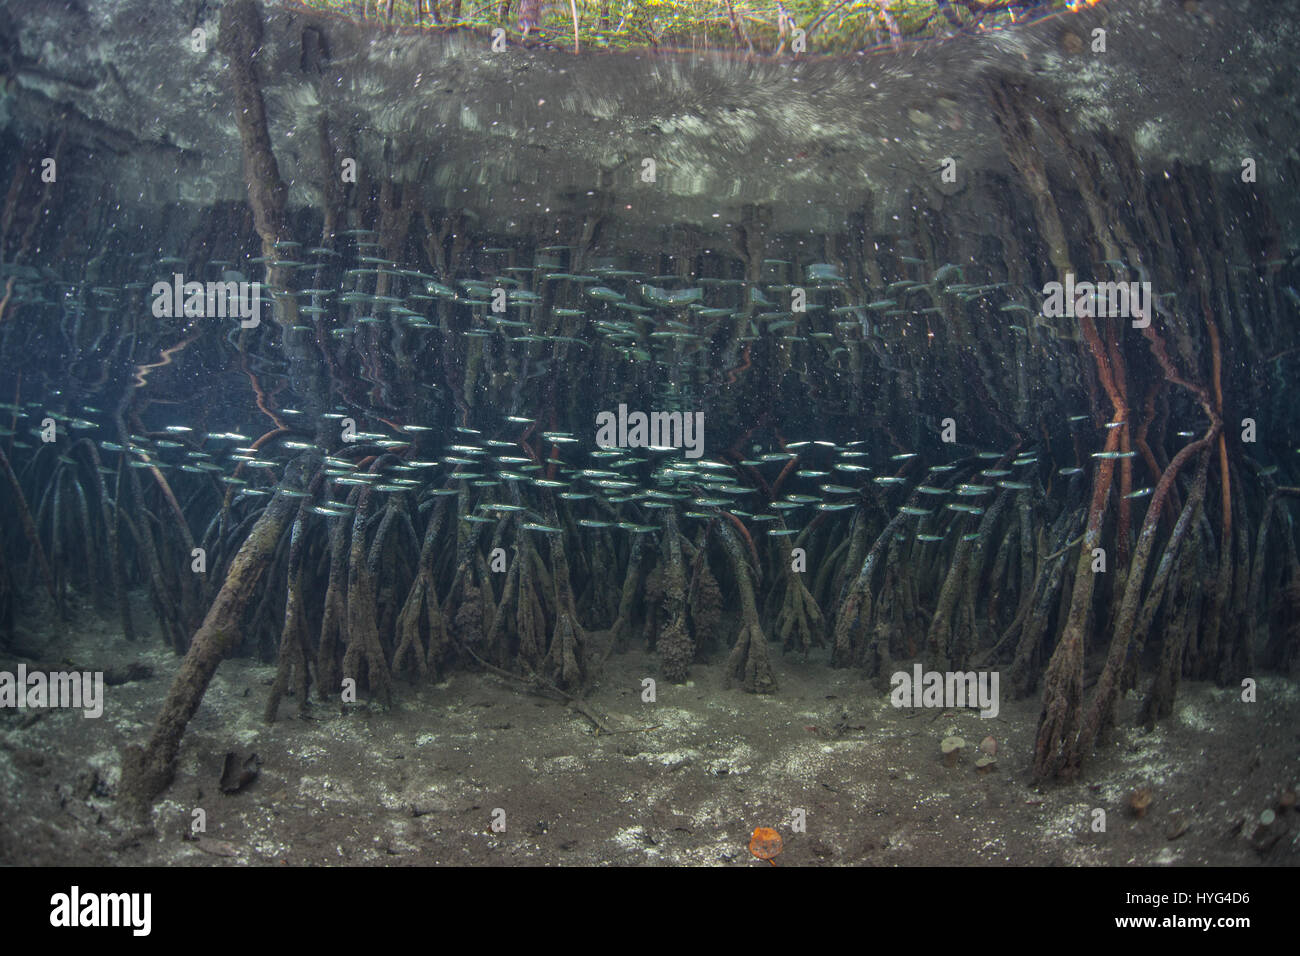 Ein blaues Wasser Mangrovenwald wächst in Raja Ampat, Indonesien. Dieser entlegenen Gegend ist bekannt für seine spektakulären Artenvielfalt. Stockfoto